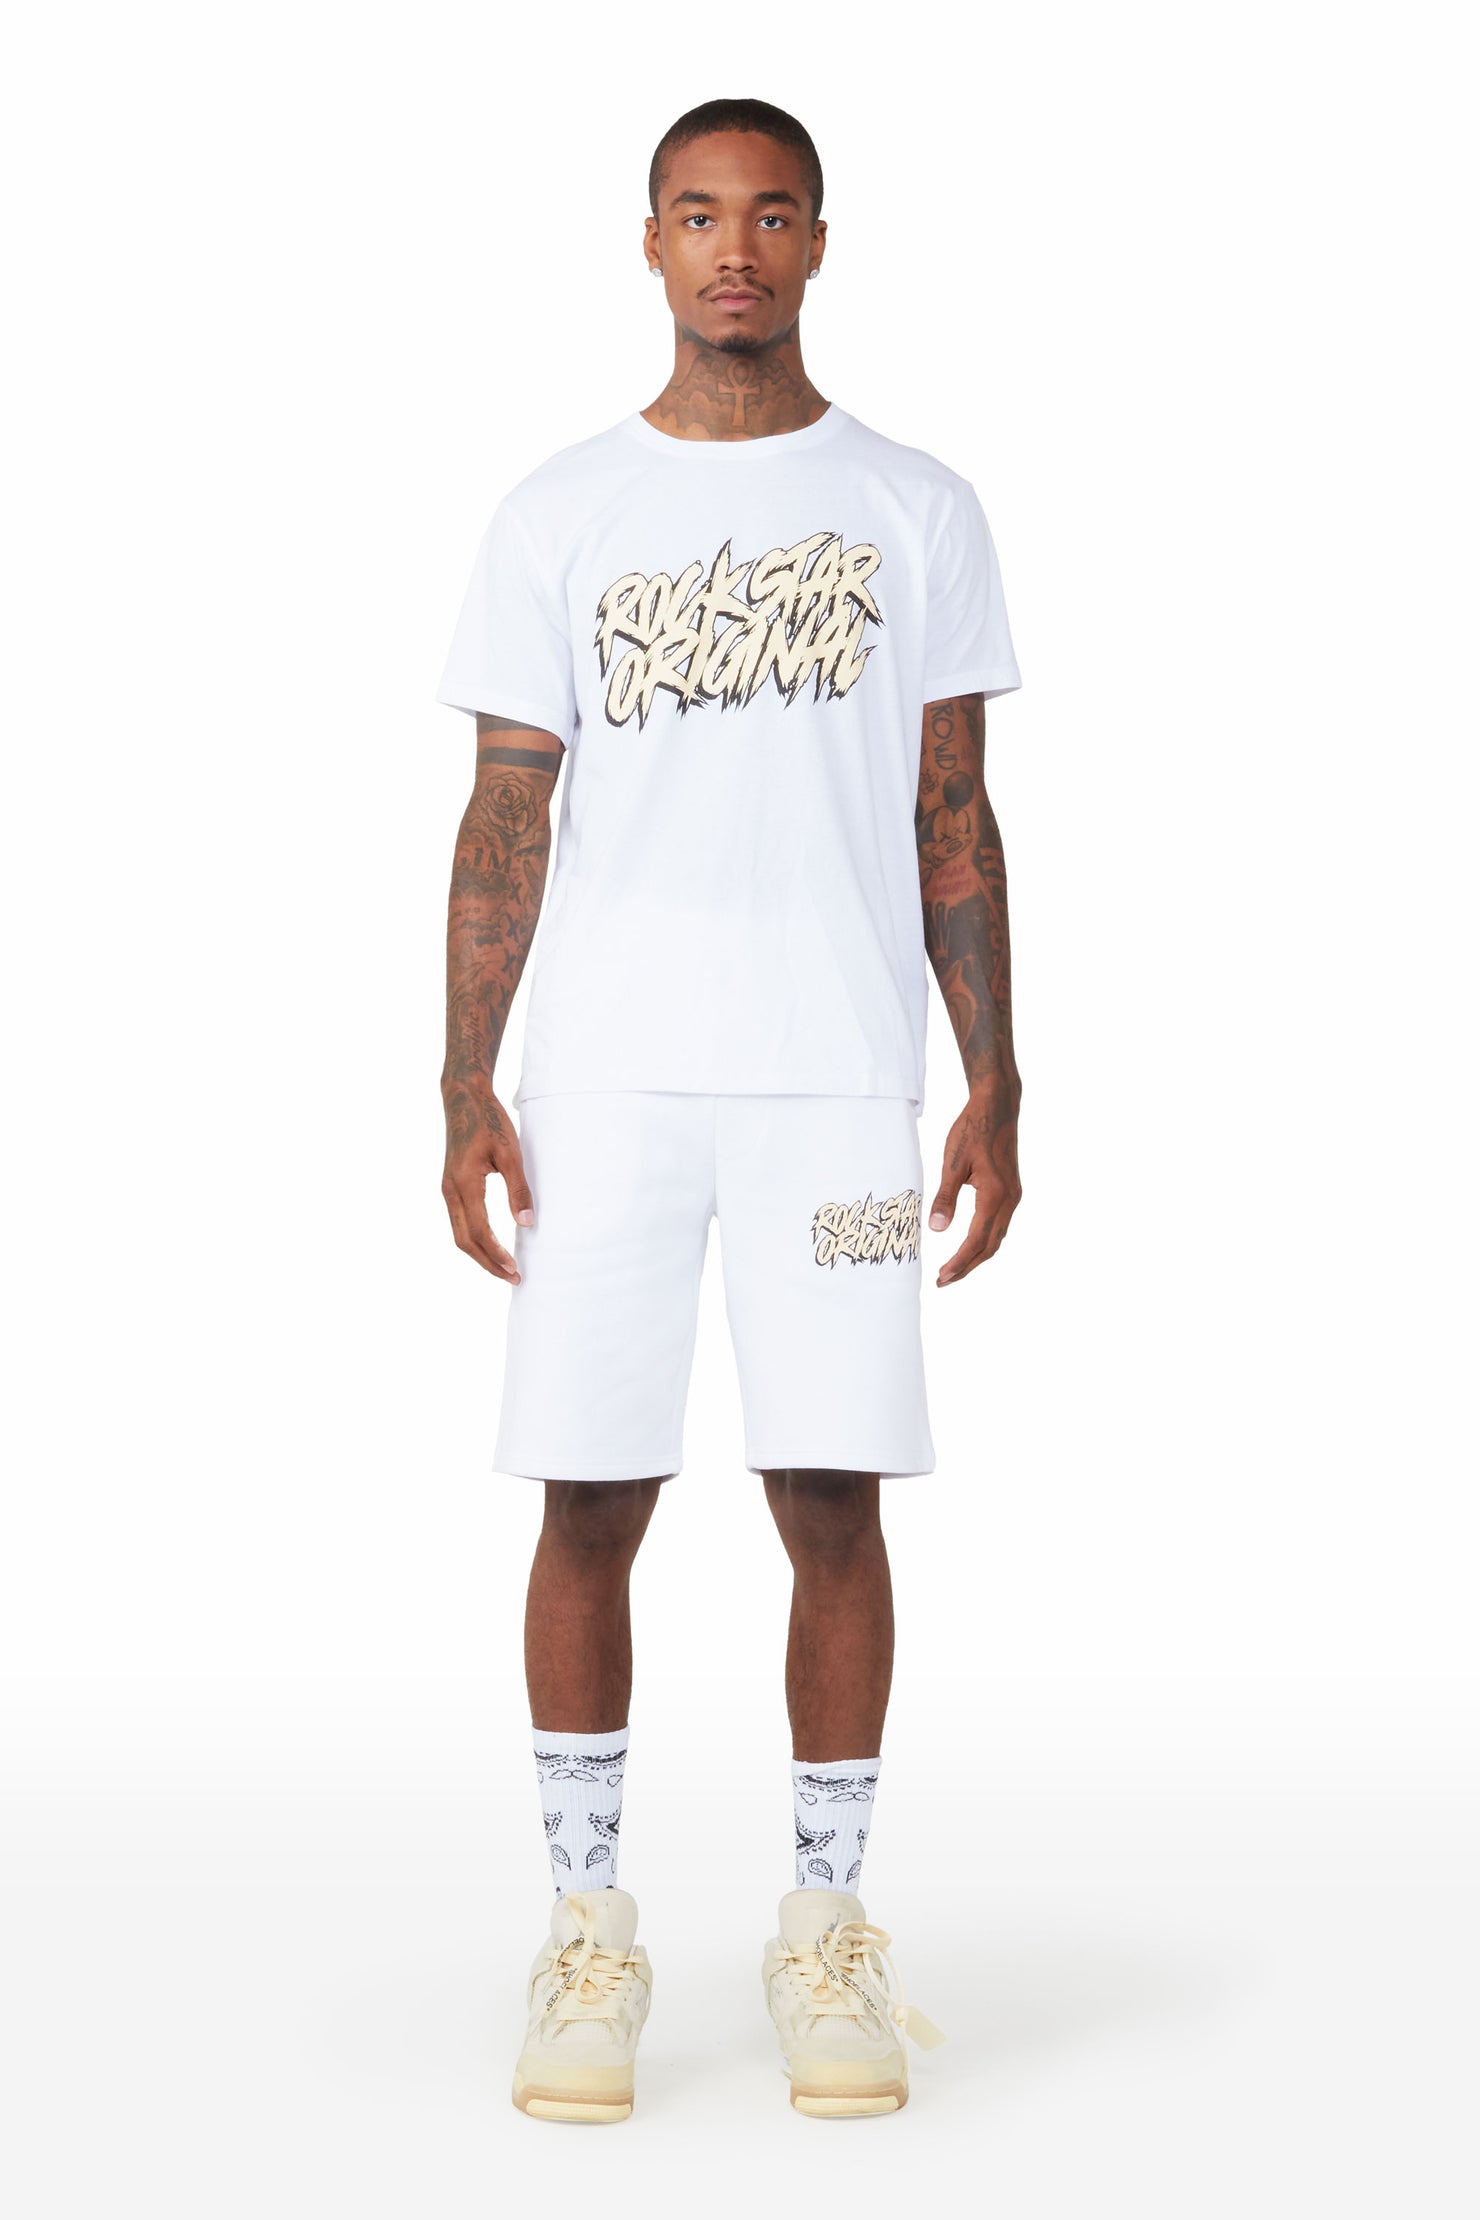 Zustrand White/Cream T-Shirt Short Set